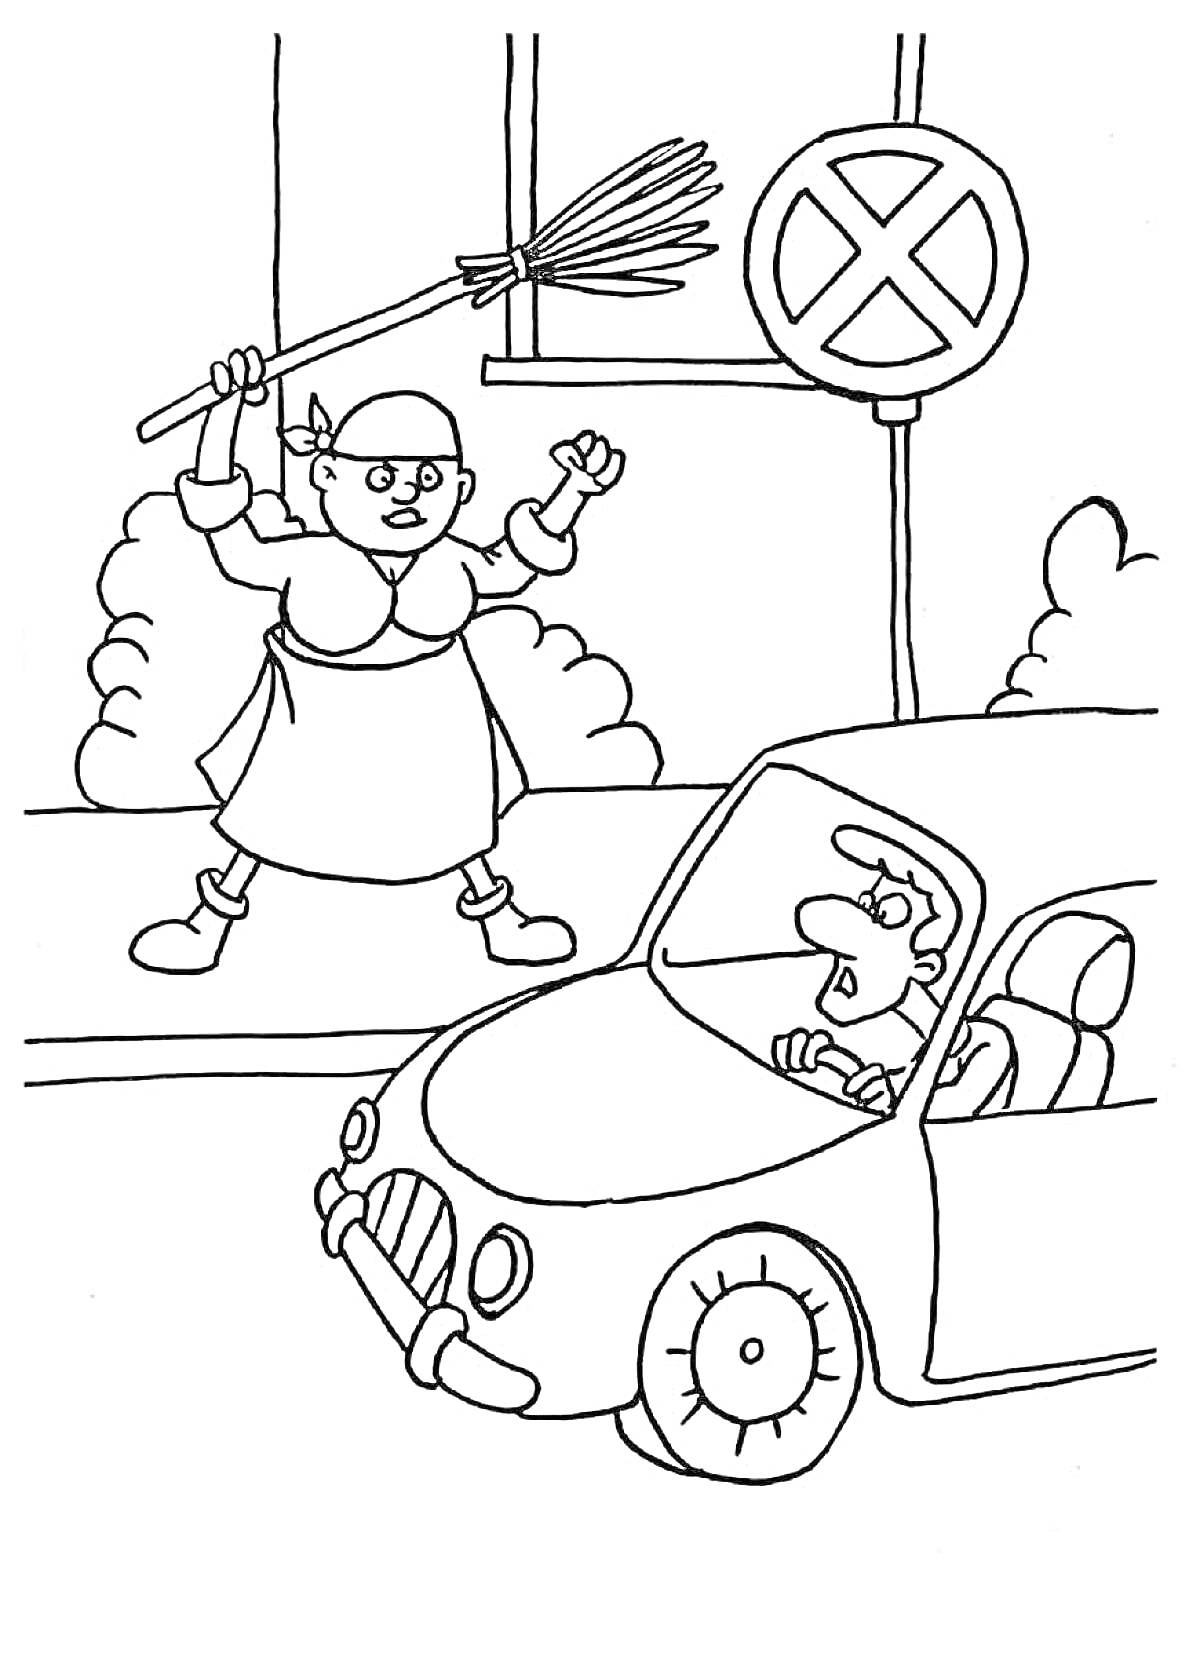 Пожилая женщина с веником ругается на водителя возле знака 